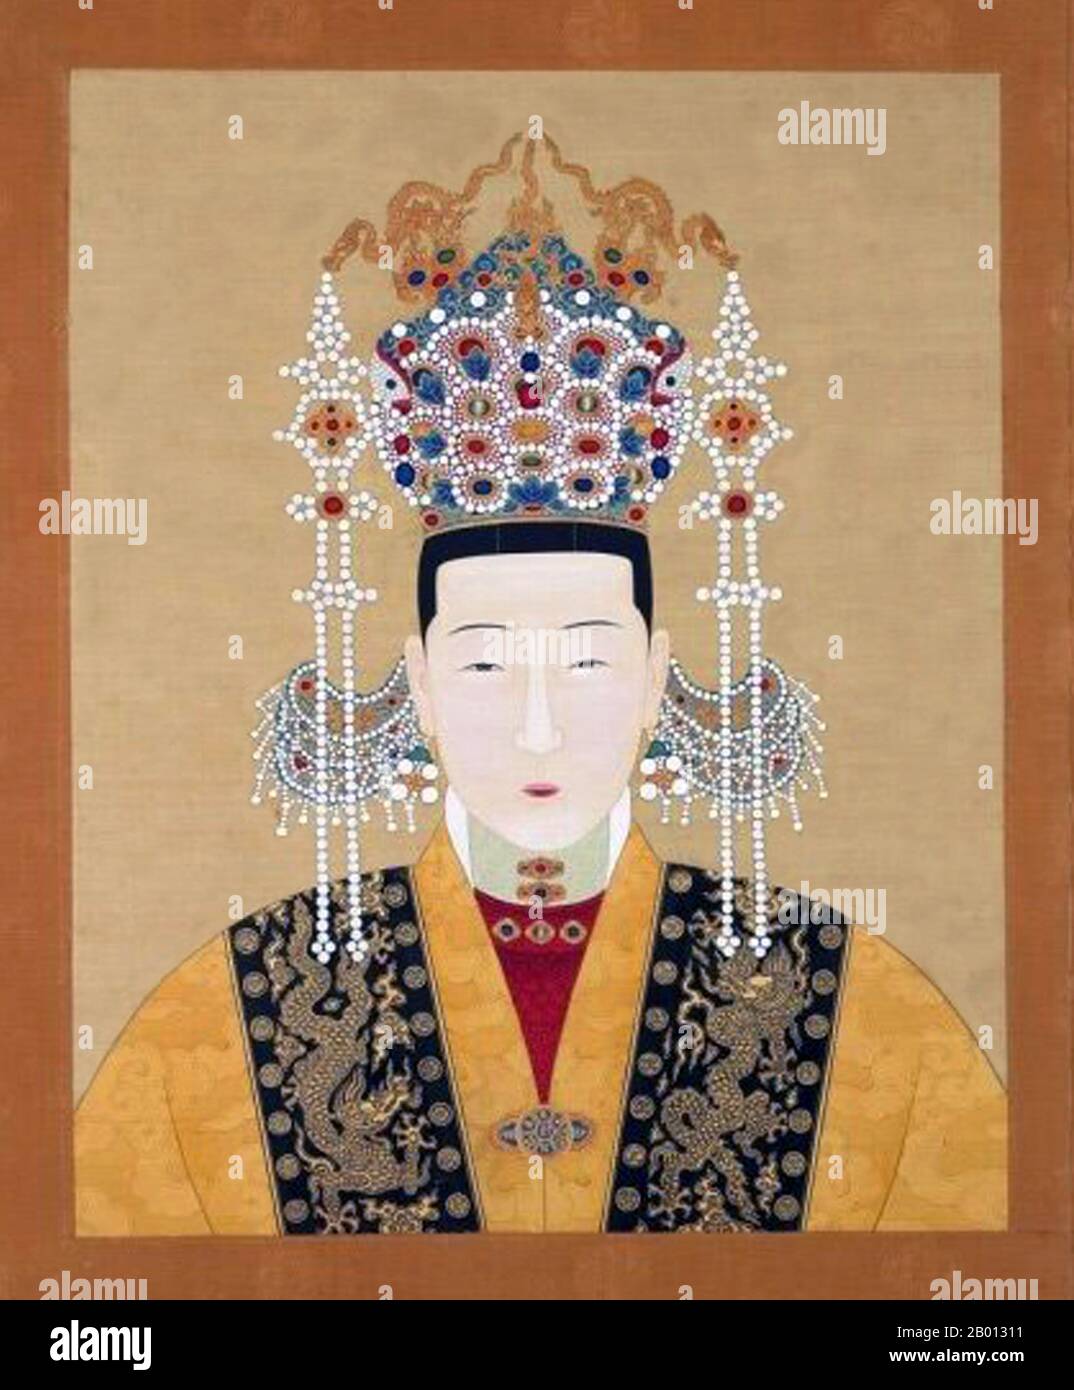 Chine : impératrice Xiao Jie su (1508-1528), consort du 12ème empereur Jiajing (r. 1521-1567). Décoration de voluet suspendue, XVIe-XVIIe siècle. L'impératrice Chen (1508-1528), officiellement l'impératrice Xiaojiesu, était la consort de l'empereur Jiajing de la dynastie Ming. Elle a été choisie pour être impératrice par sa tante, l'impératrice Dowager Zhang, bien que la relation personnelle tendue entre l'empereur et le dowager signifiait que l'empereur Jiajing n'avait pas de goût envers Chen. Lorsqu'elle était enceinte, l'empereur l'a exposée à une forme de rage qui a causé une fausse couche fatale. Banque D'Images